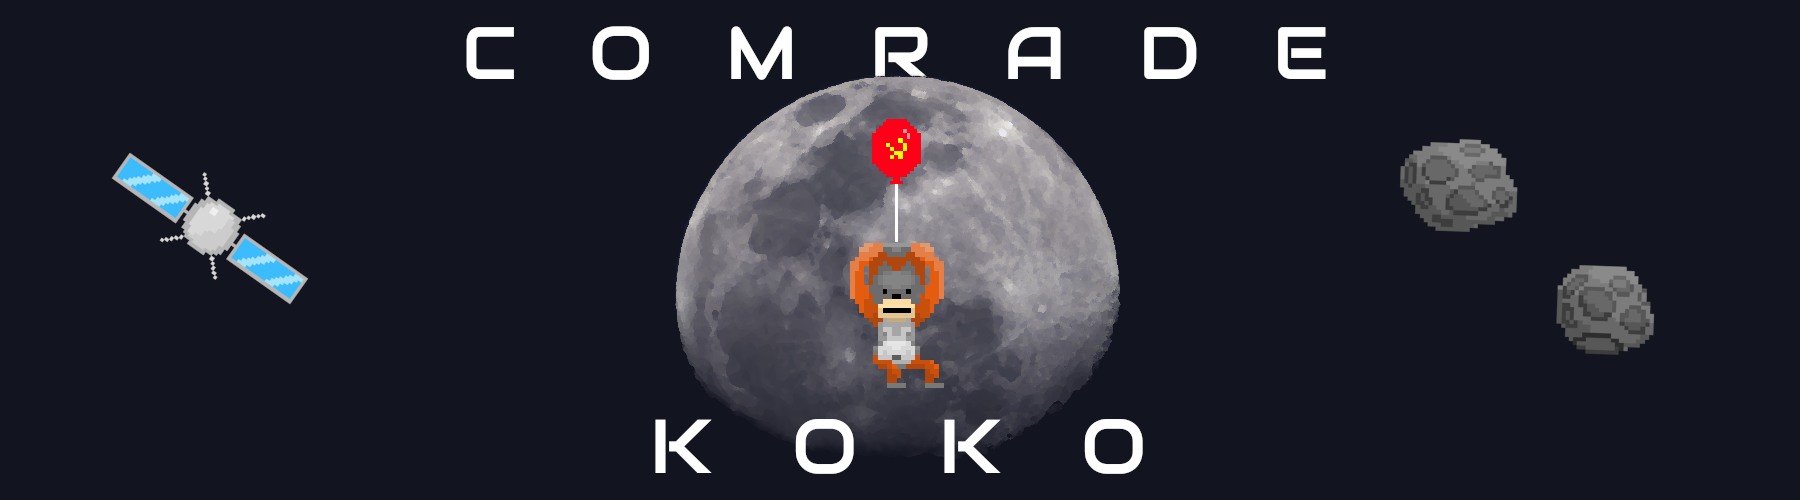 Comrade Koko